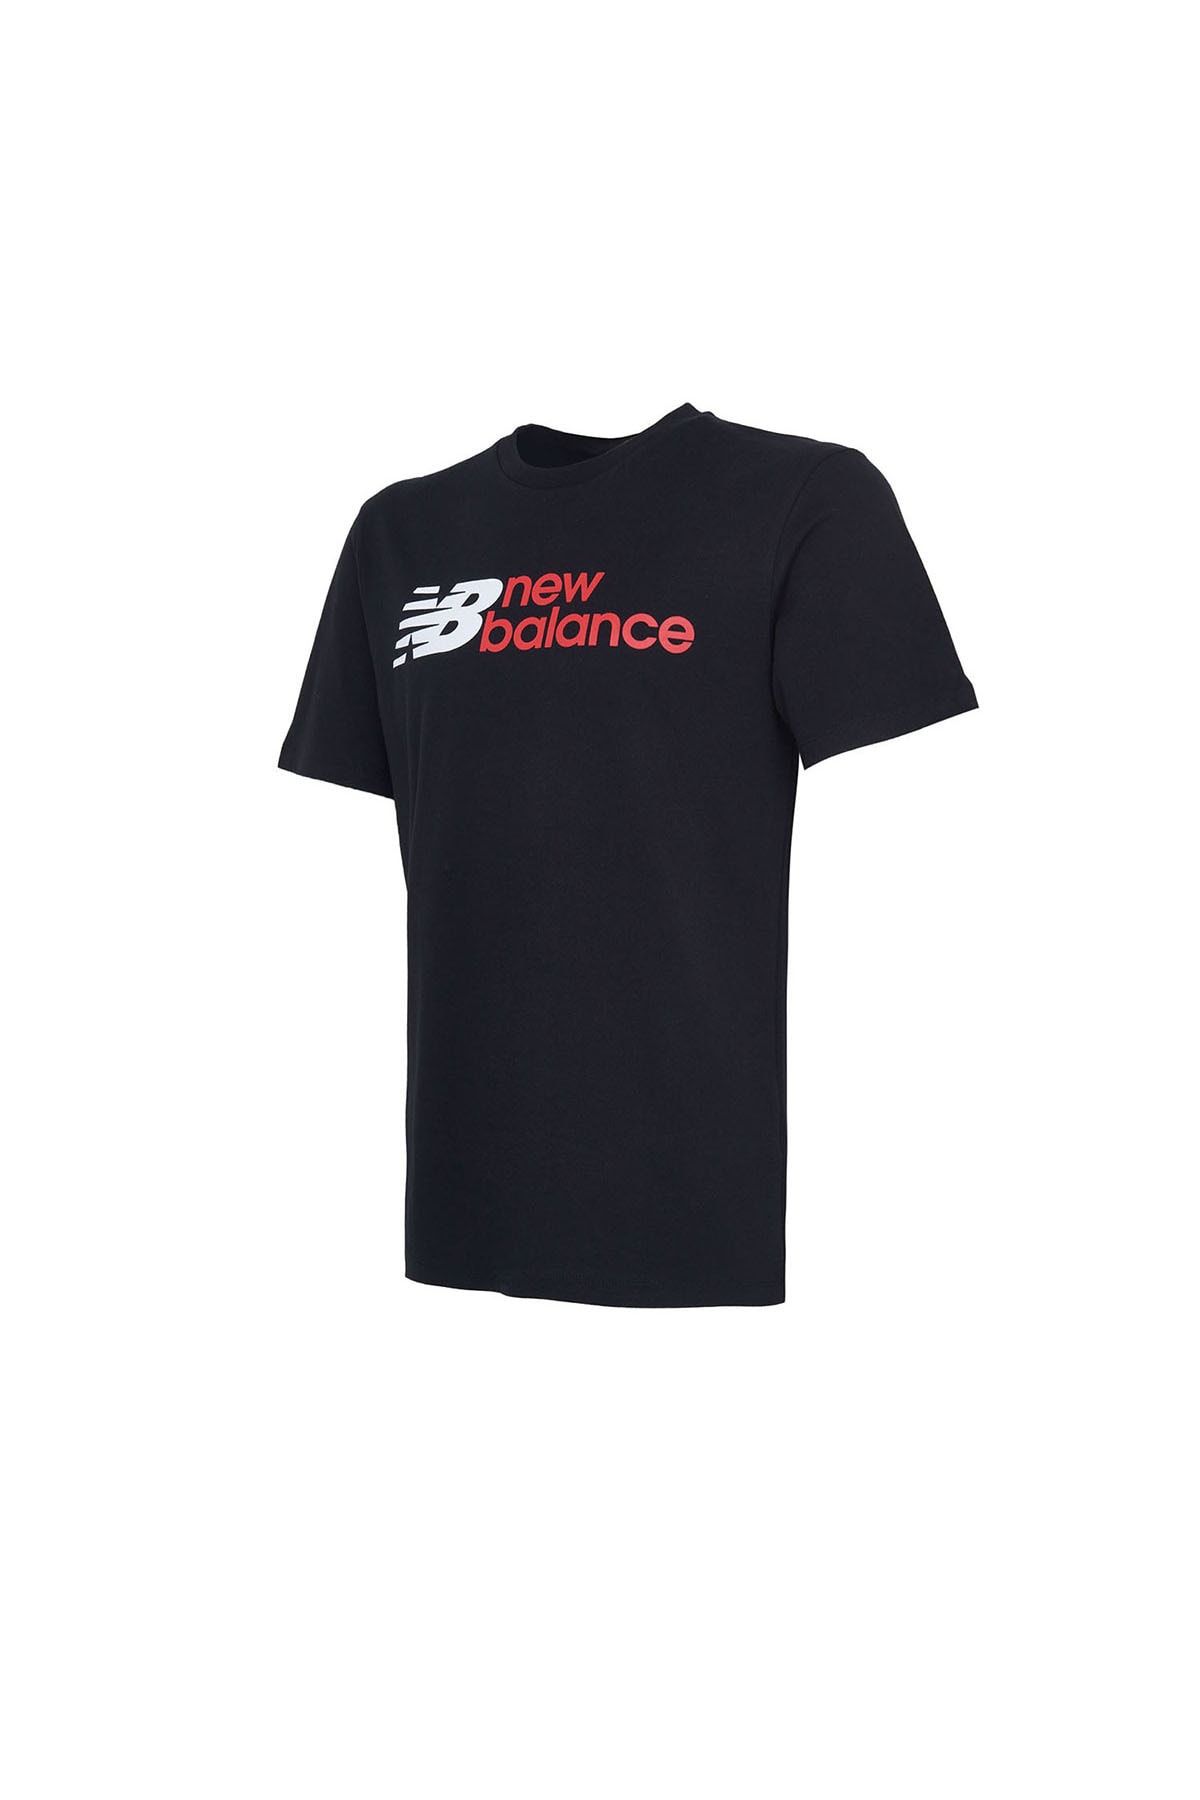 New Balance Erkek Günlük T-shirt Mnt1354-bk